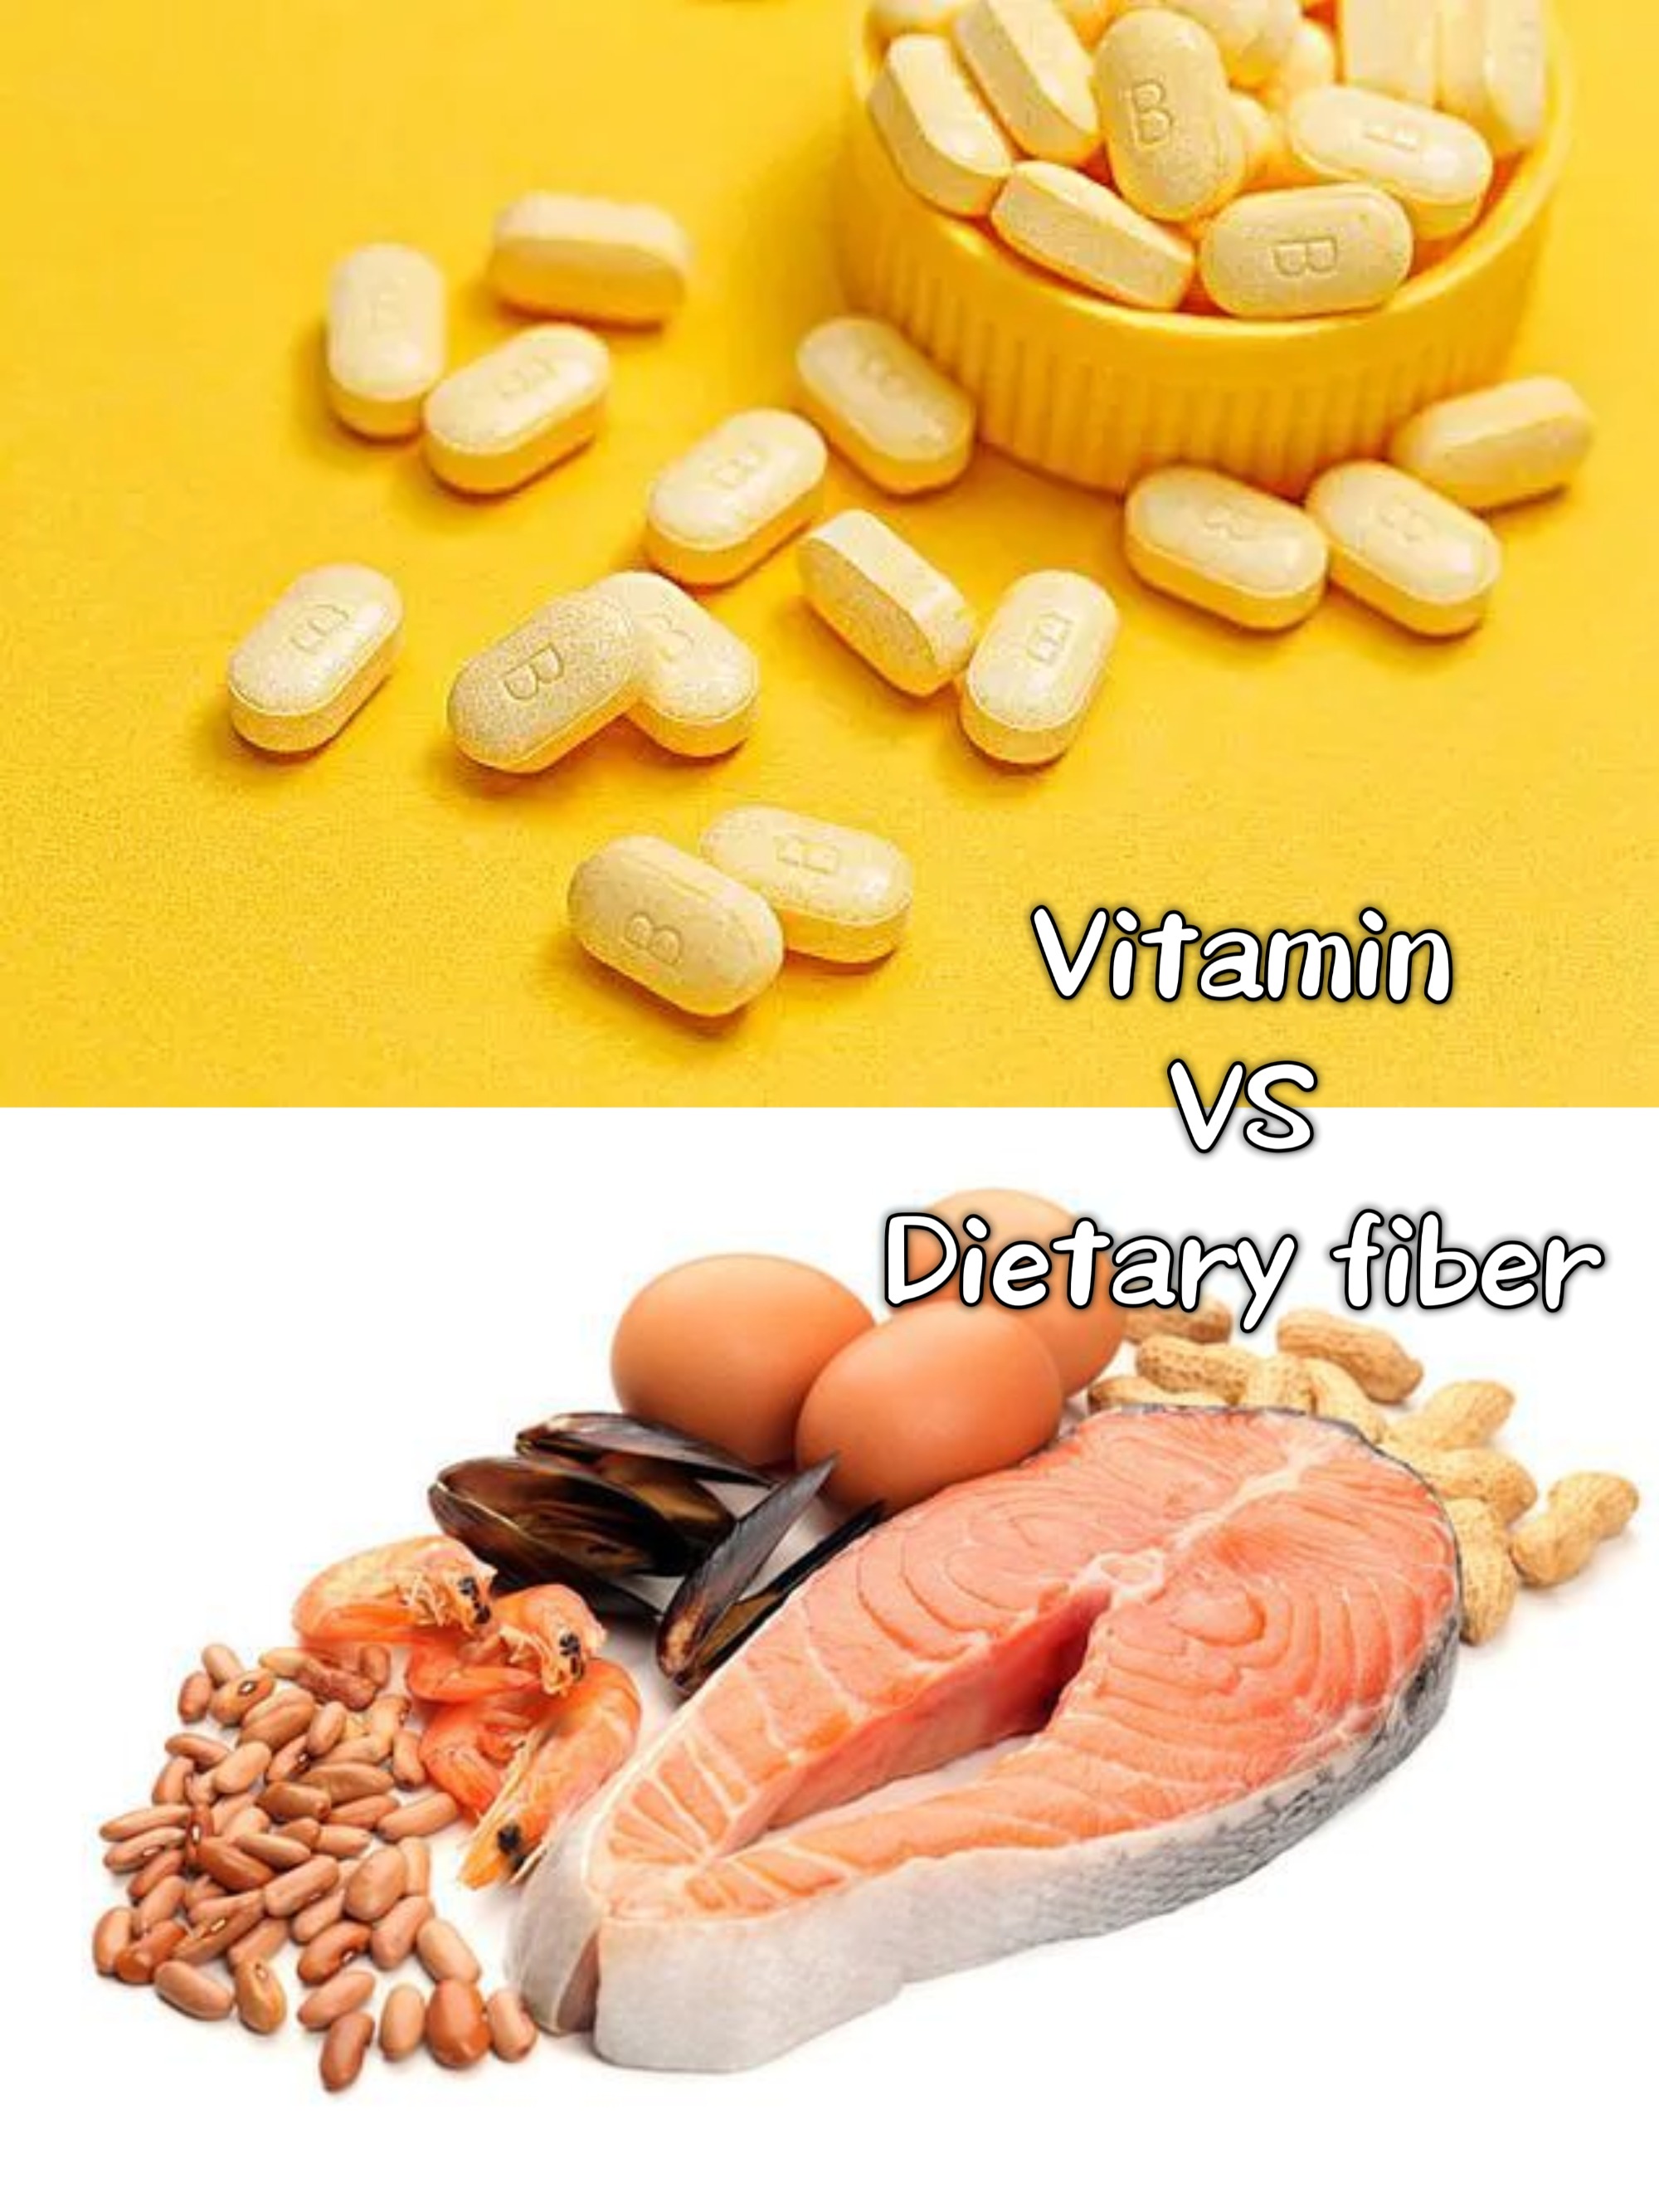 Vitamin VS Dietary fiber